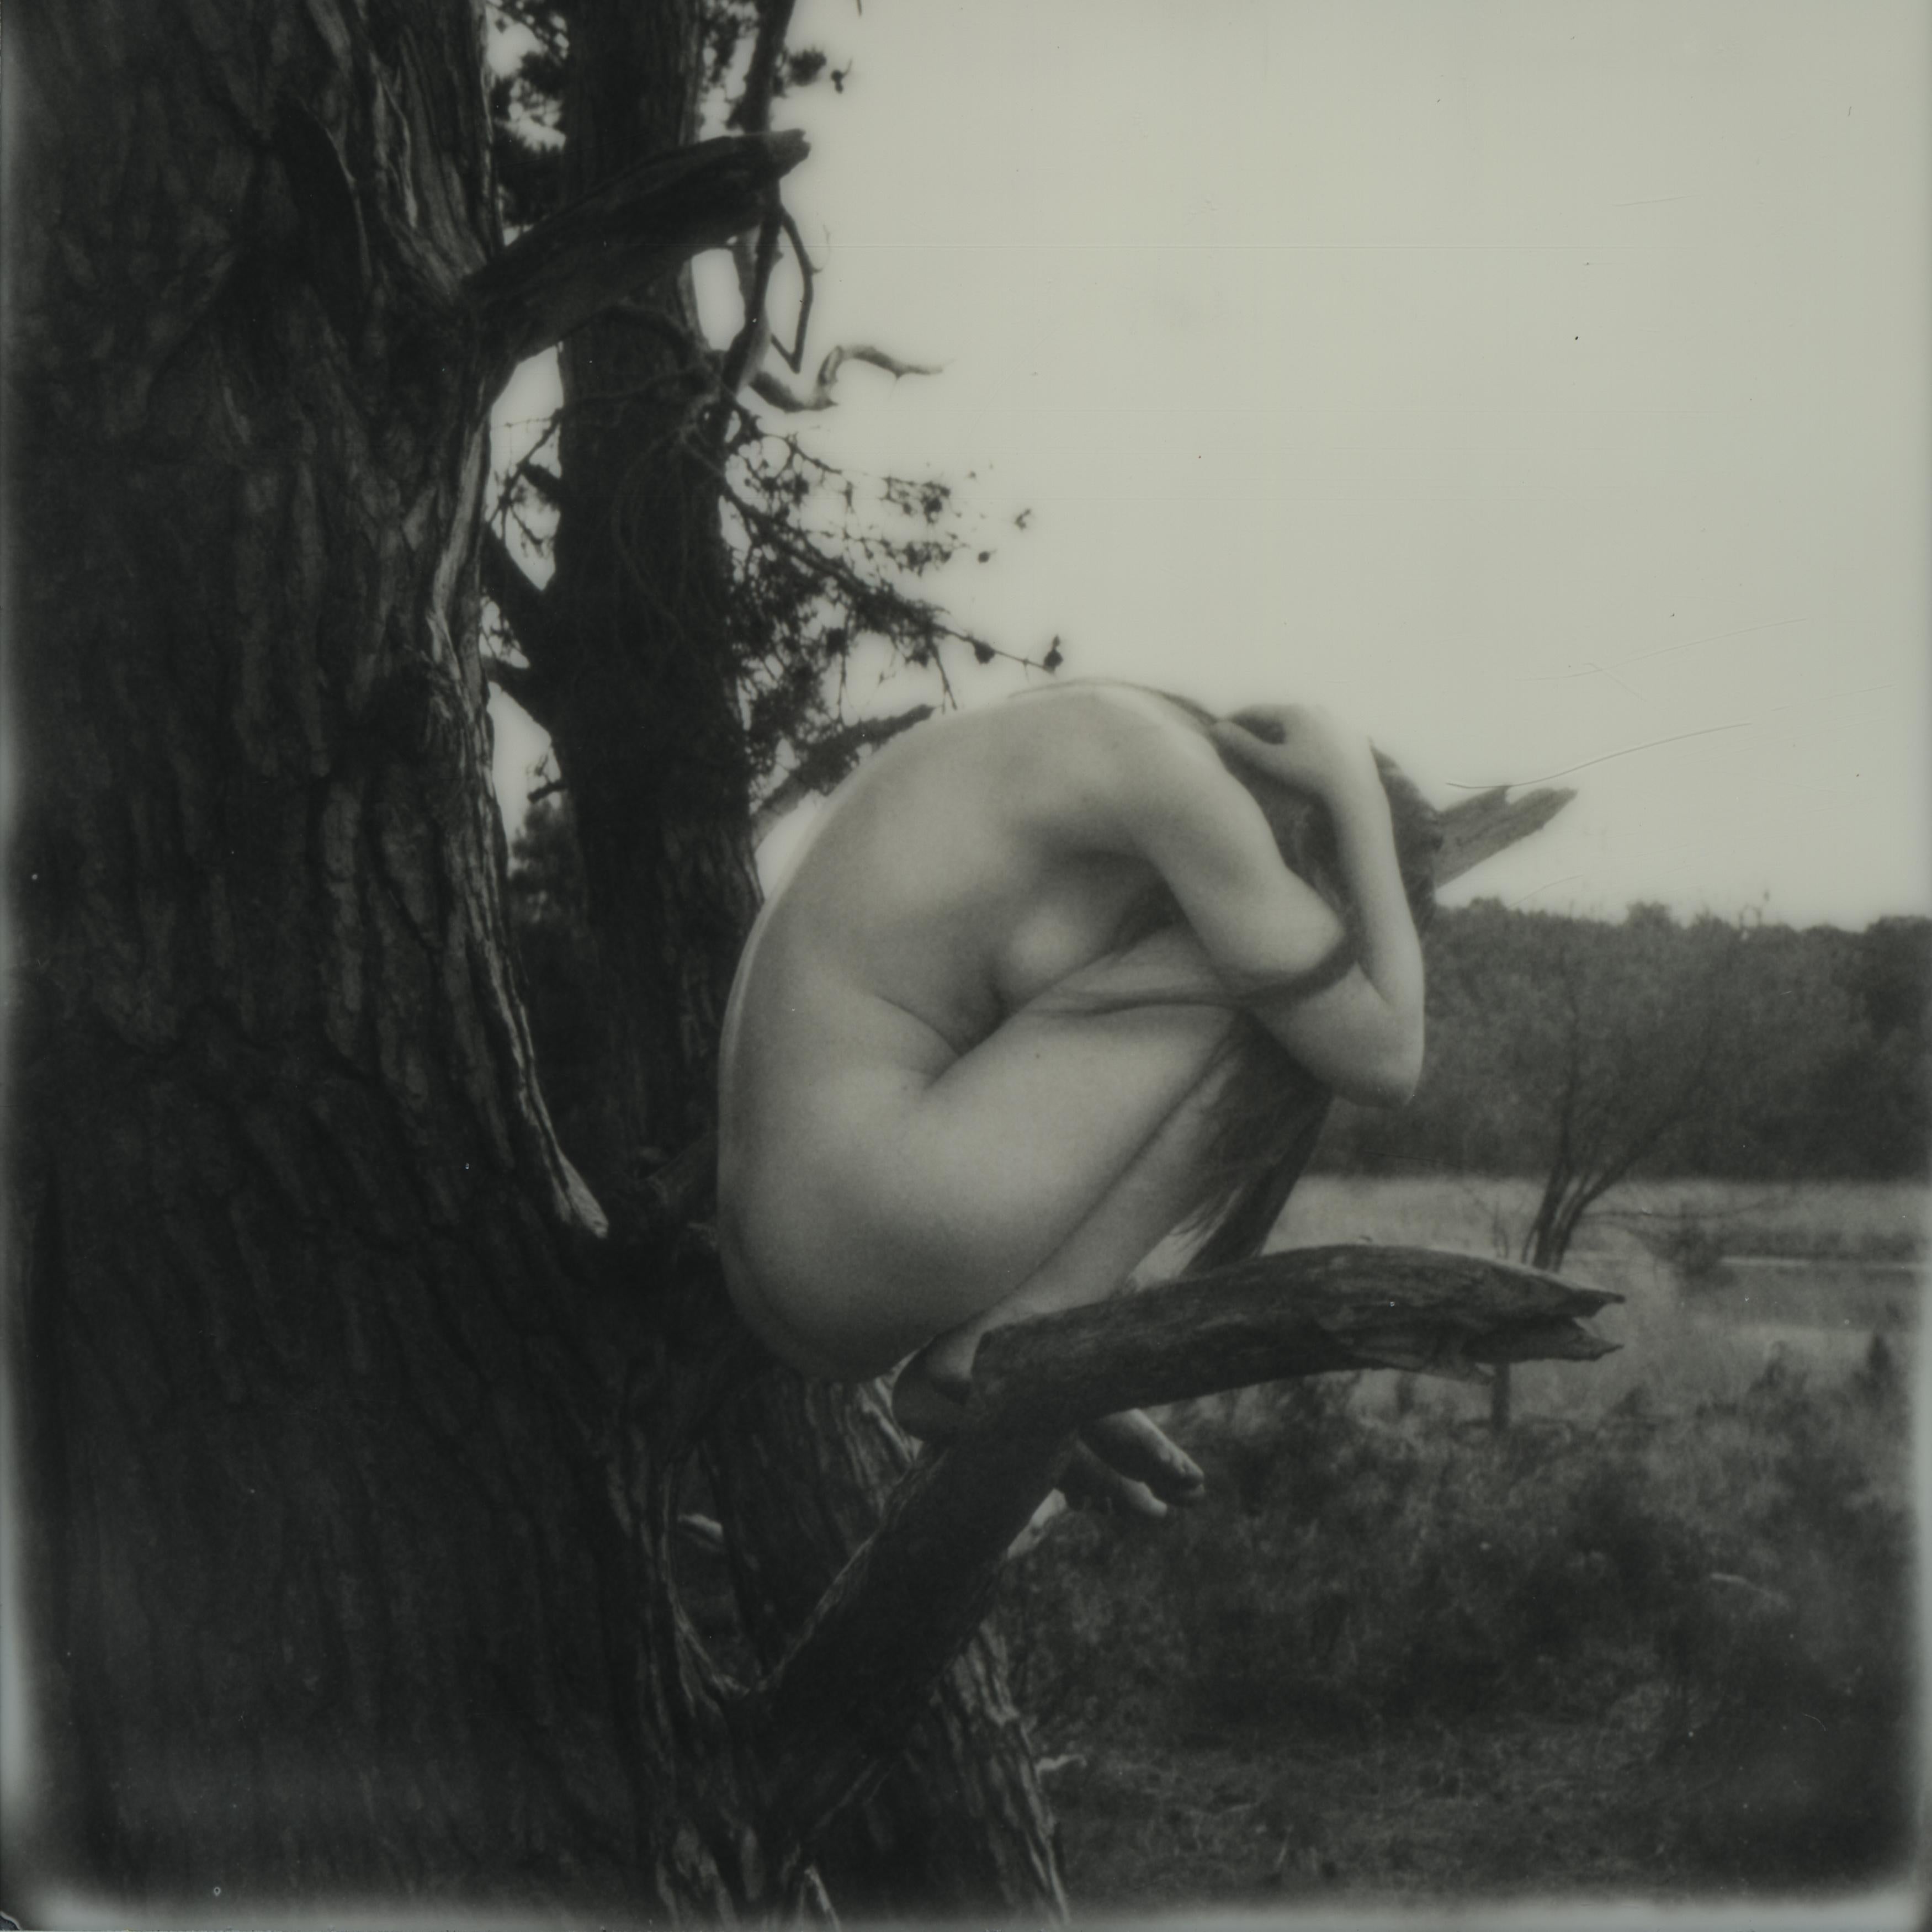 Little Lies - Contemporary, Nude, Women, Polaroid, 21st Century